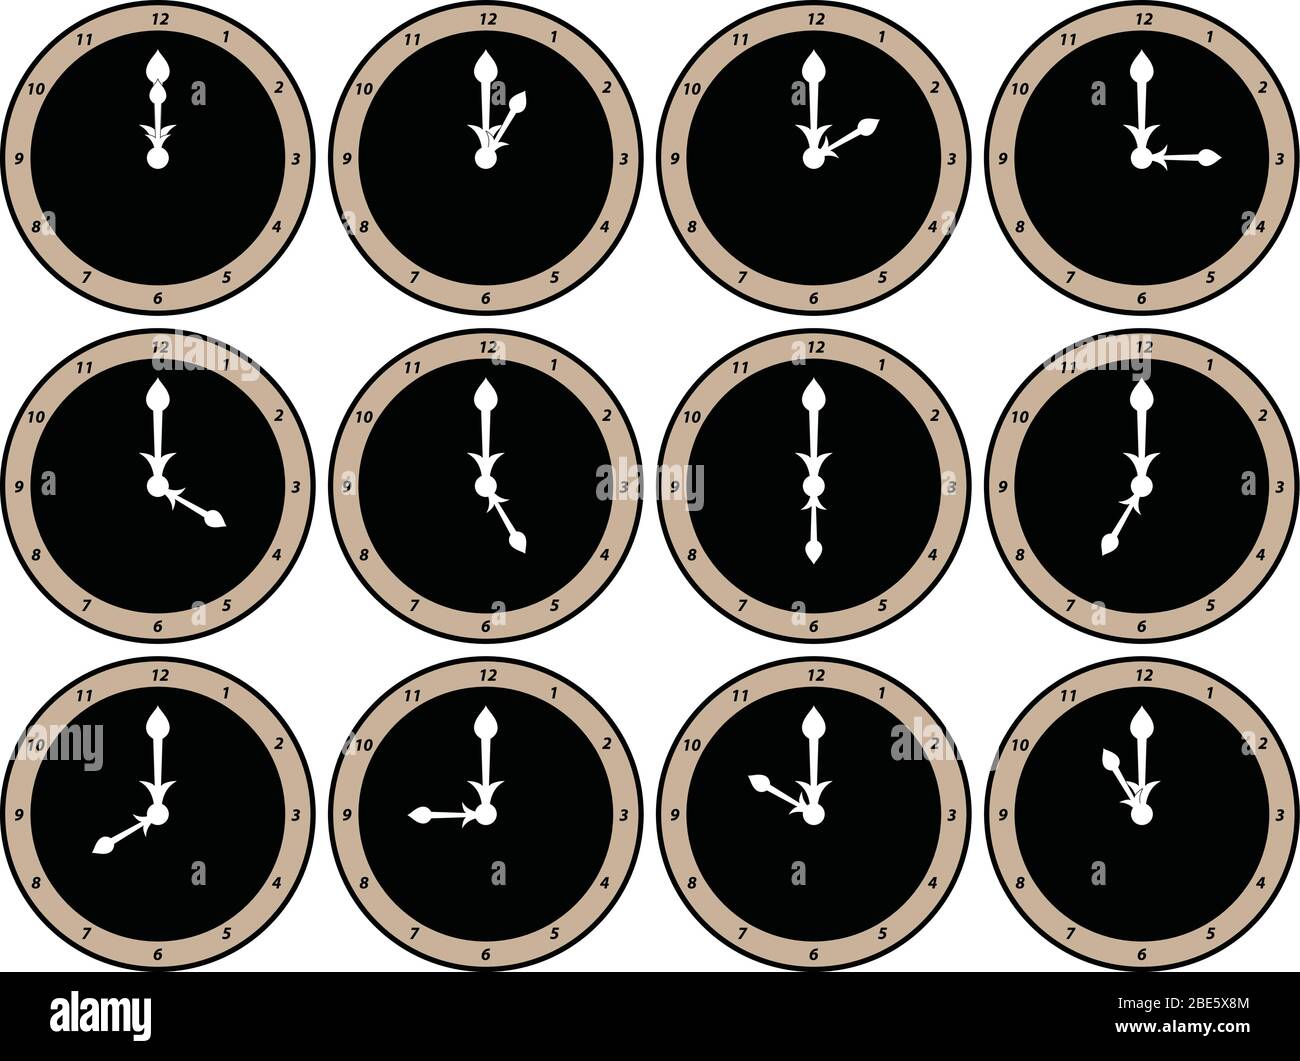 Dodici facce analogiche con lancette bianche per l'ora e i minuti che mostrano l'ora dalle ore 12 alle ore 11 Illustrazione Vettoriale